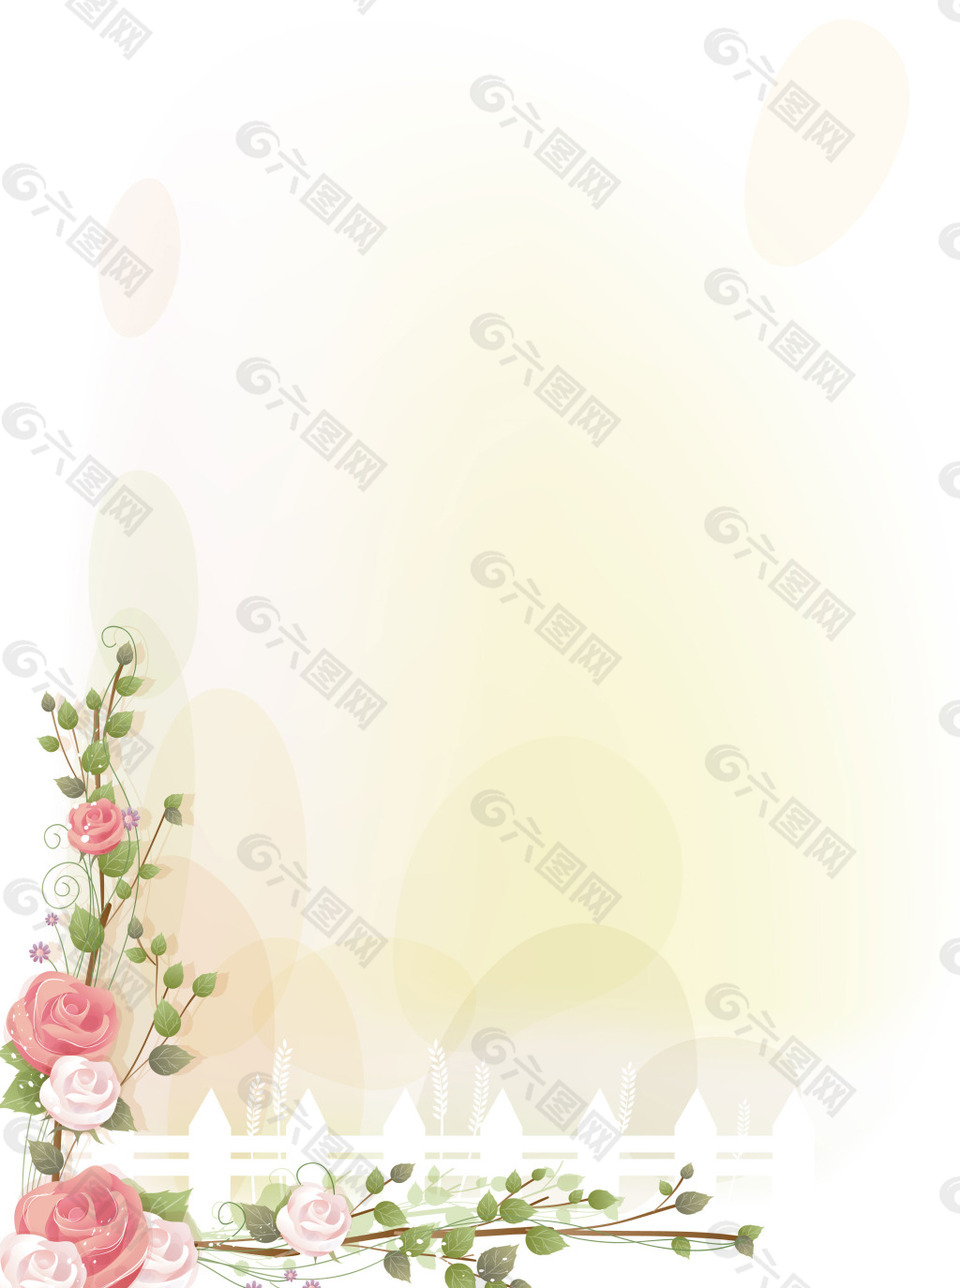 浪漫温馨蔷薇花朵背景